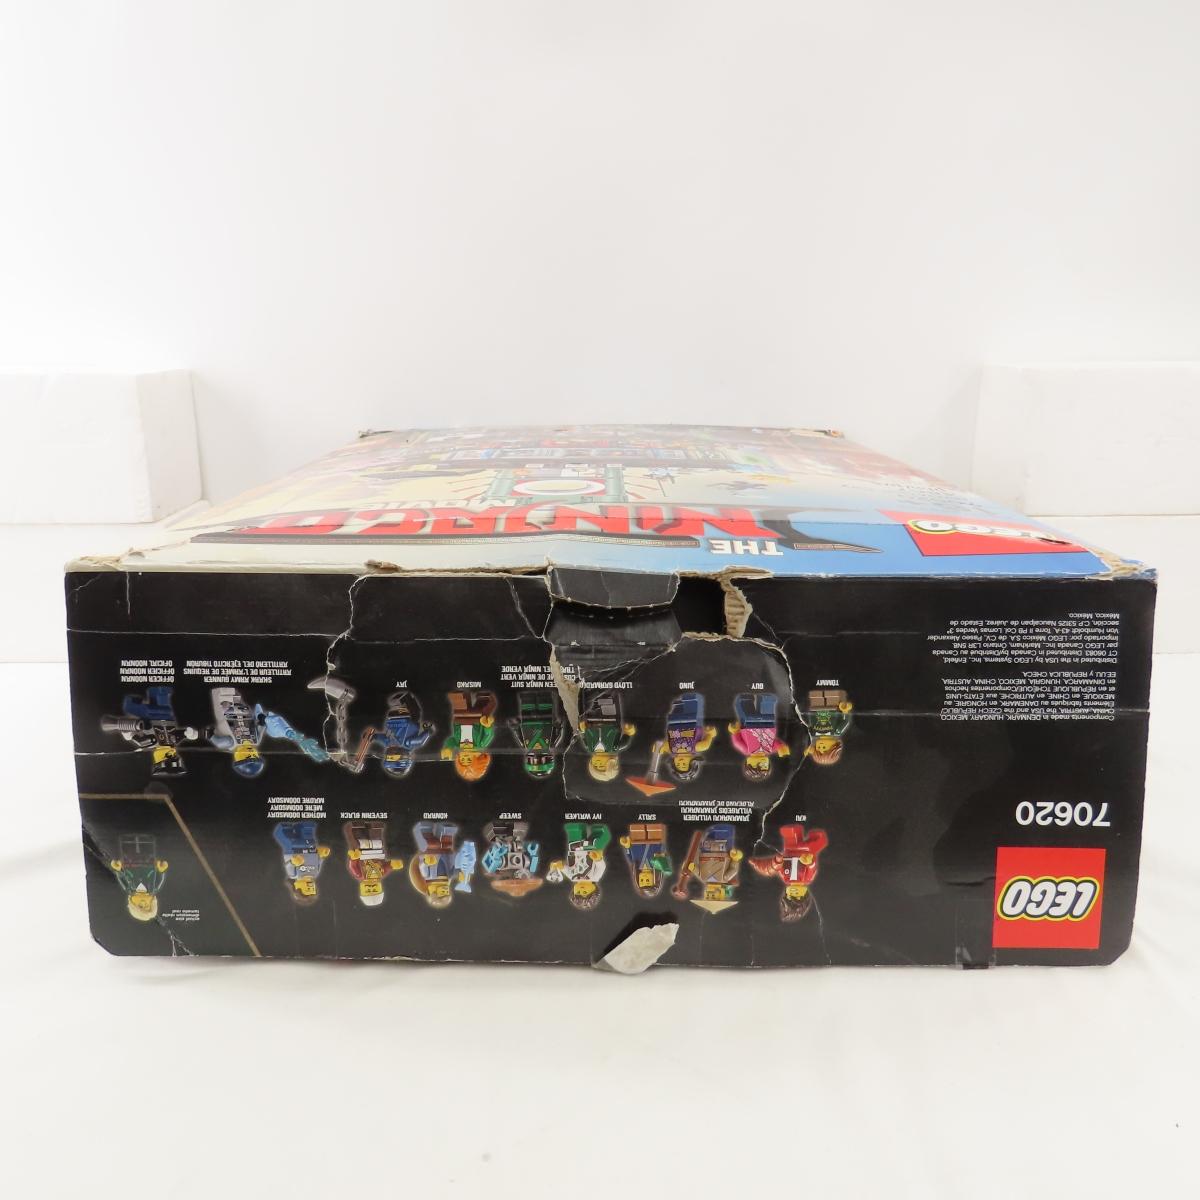 Lego The Ninjago Movie 70620 open box.